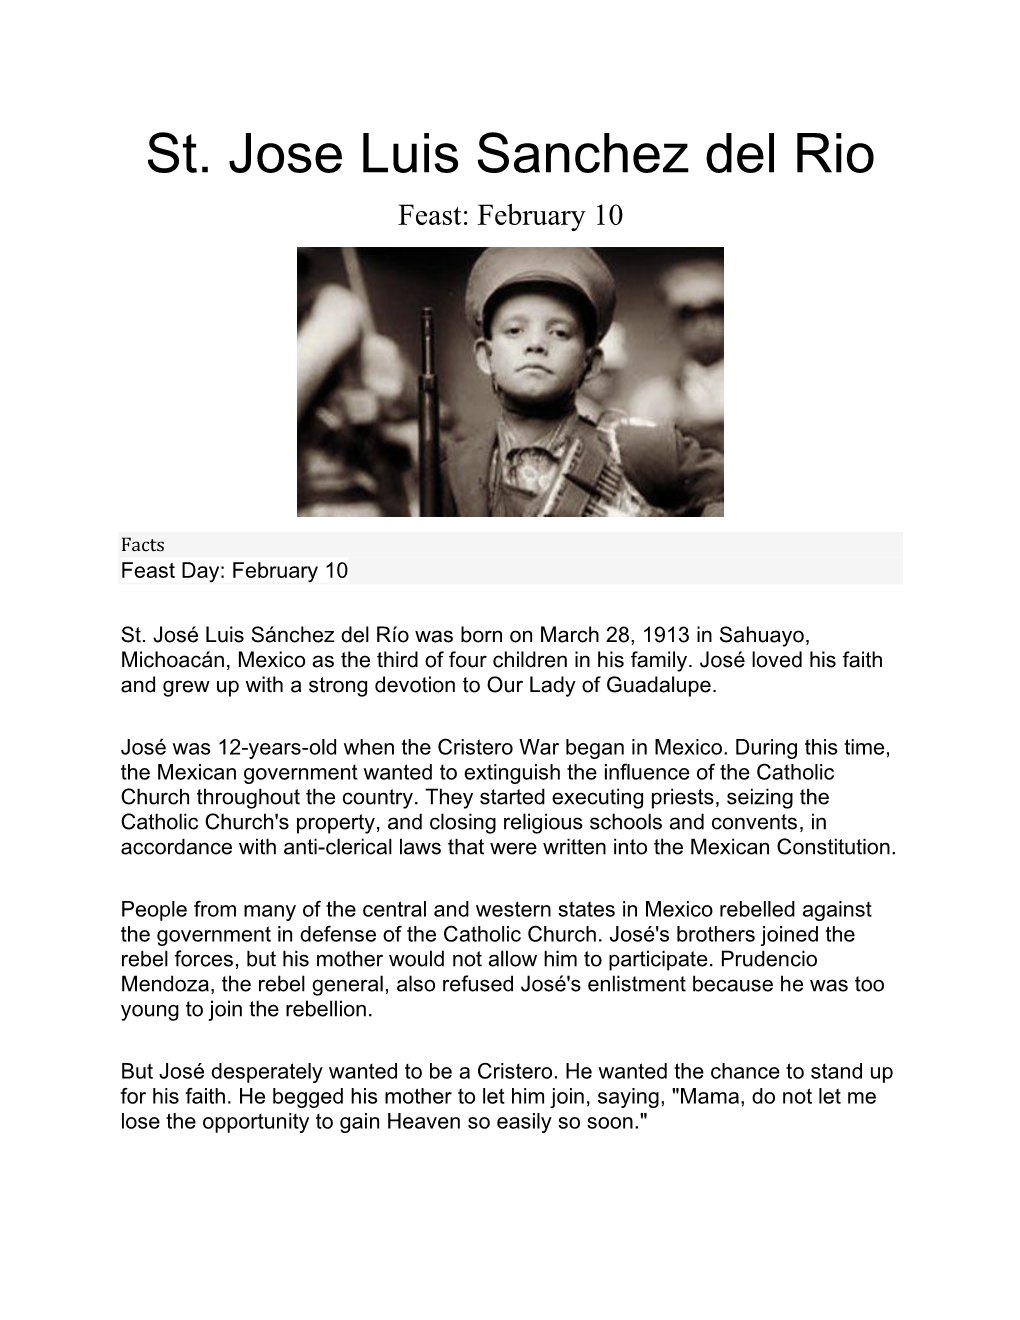 St. Jose Luis Sanchez Del Rio Feast: February 10